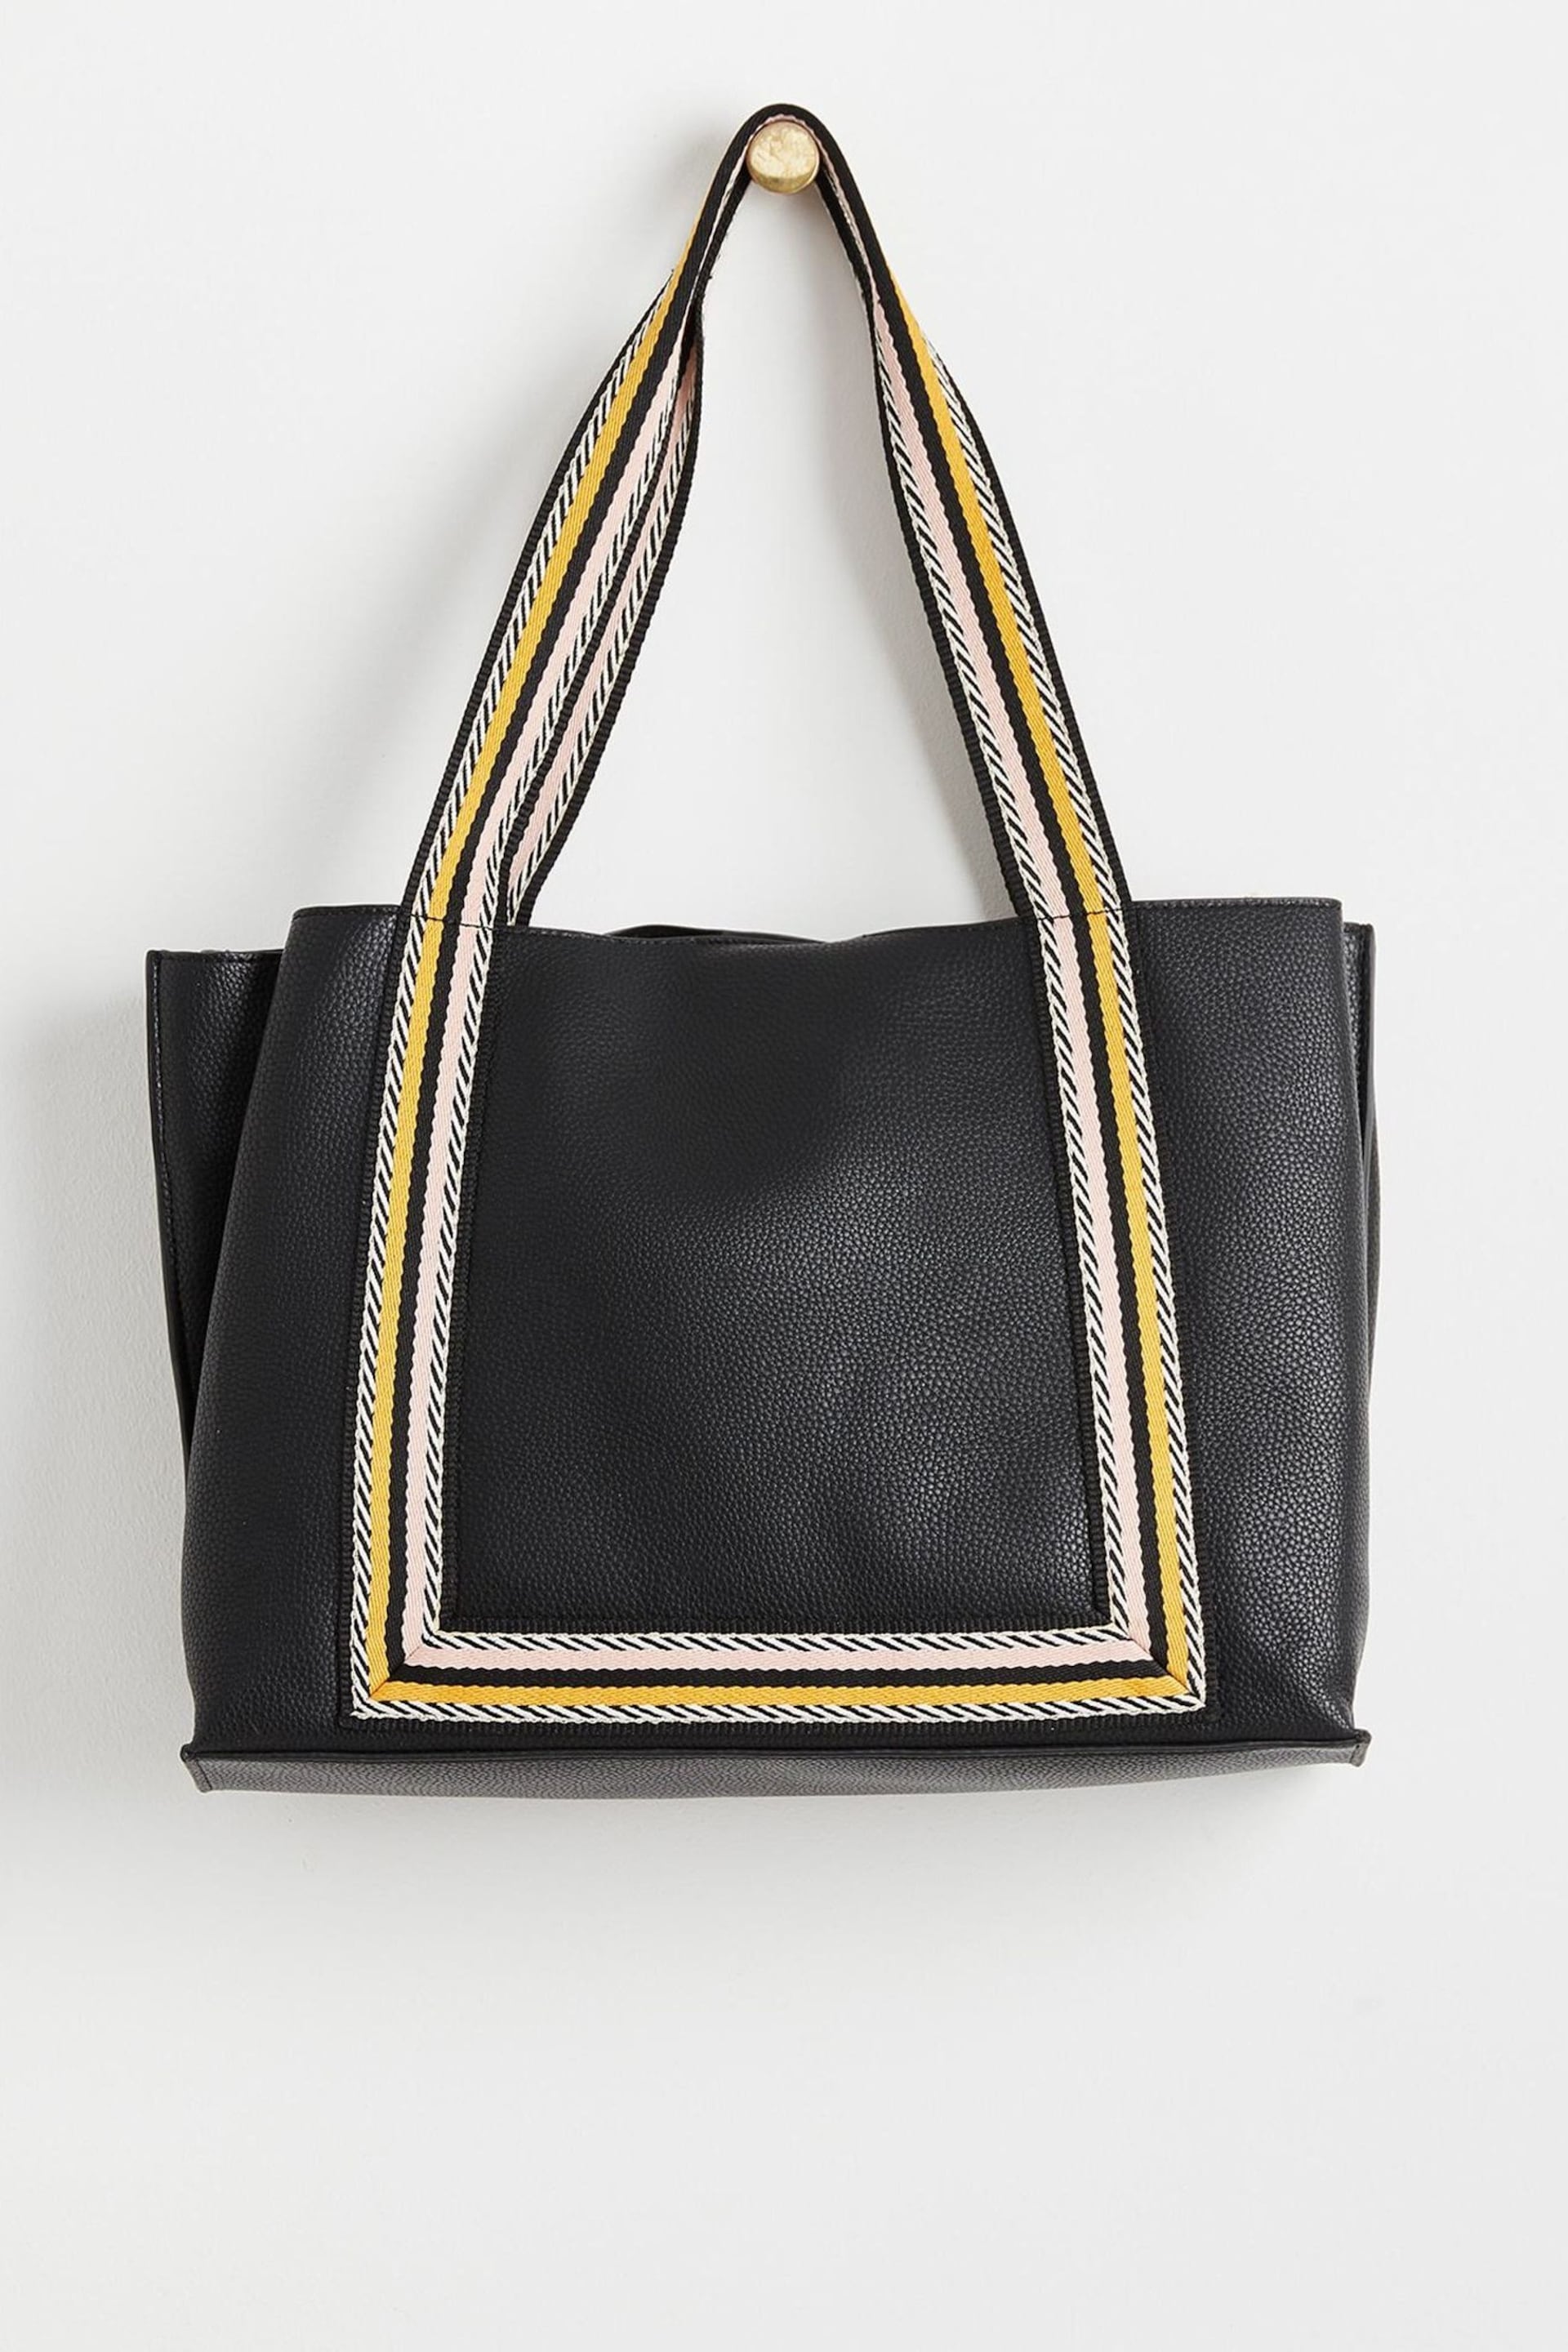 Oliver Bonas Emma Stripe Black Tote Bag - Image 2 of 5